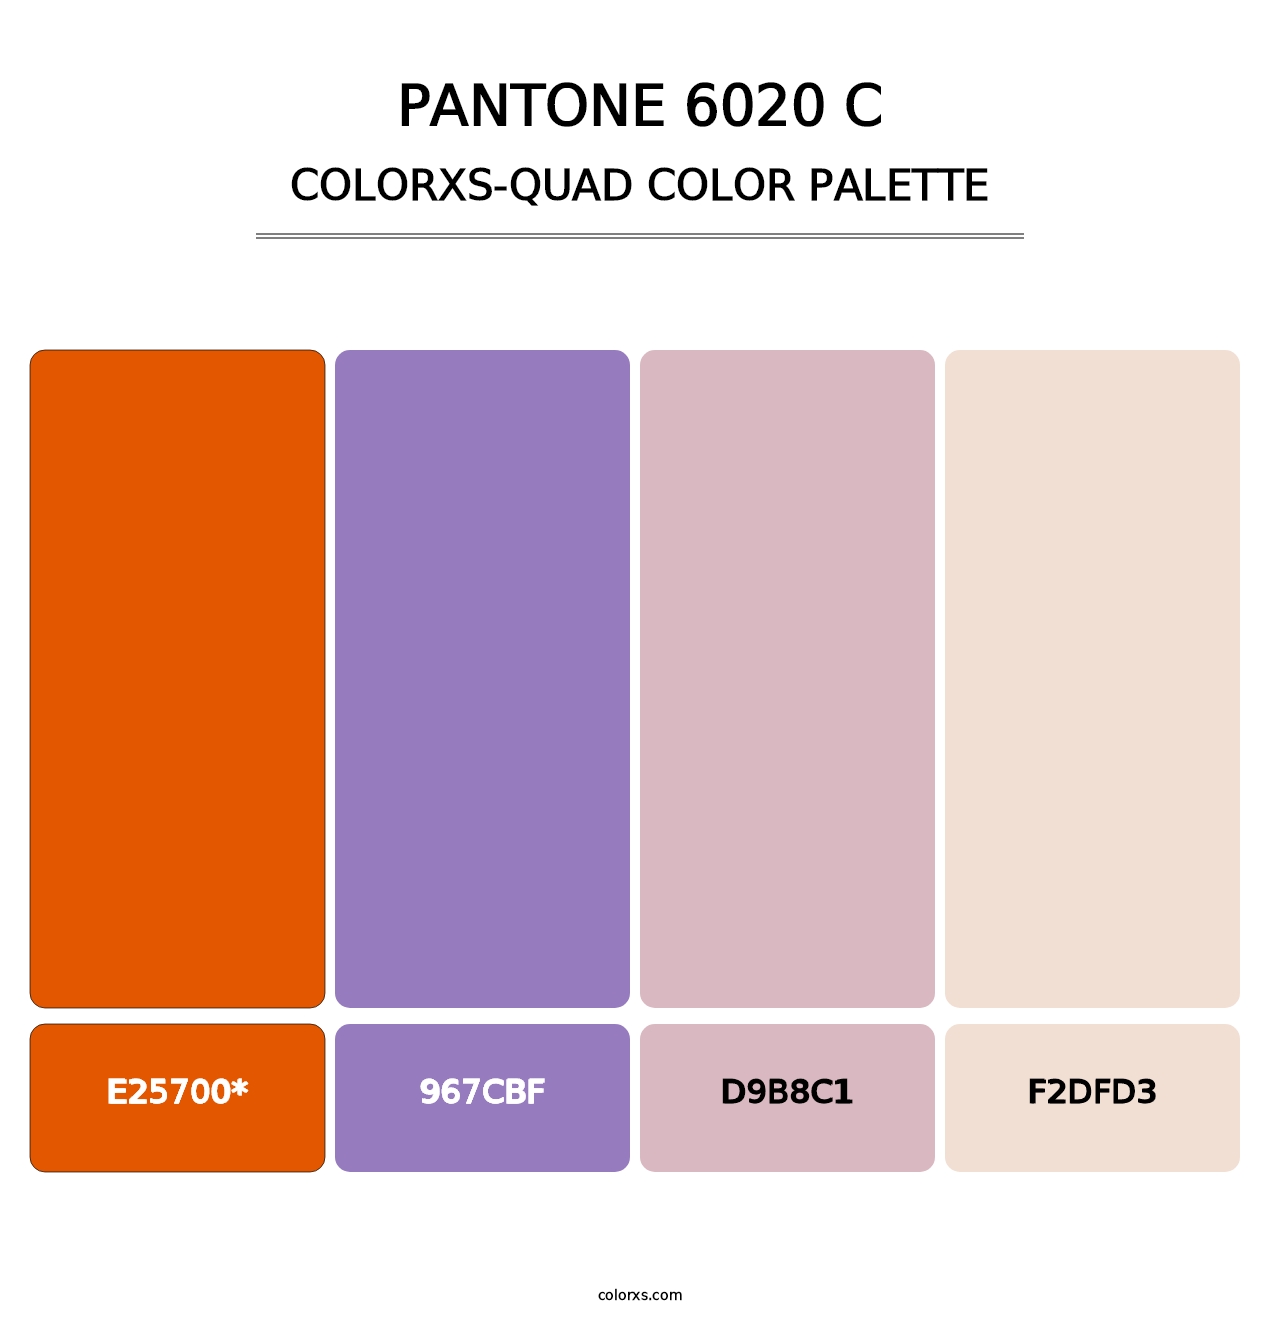 PANTONE 6020 C - Colorxs Quad Palette